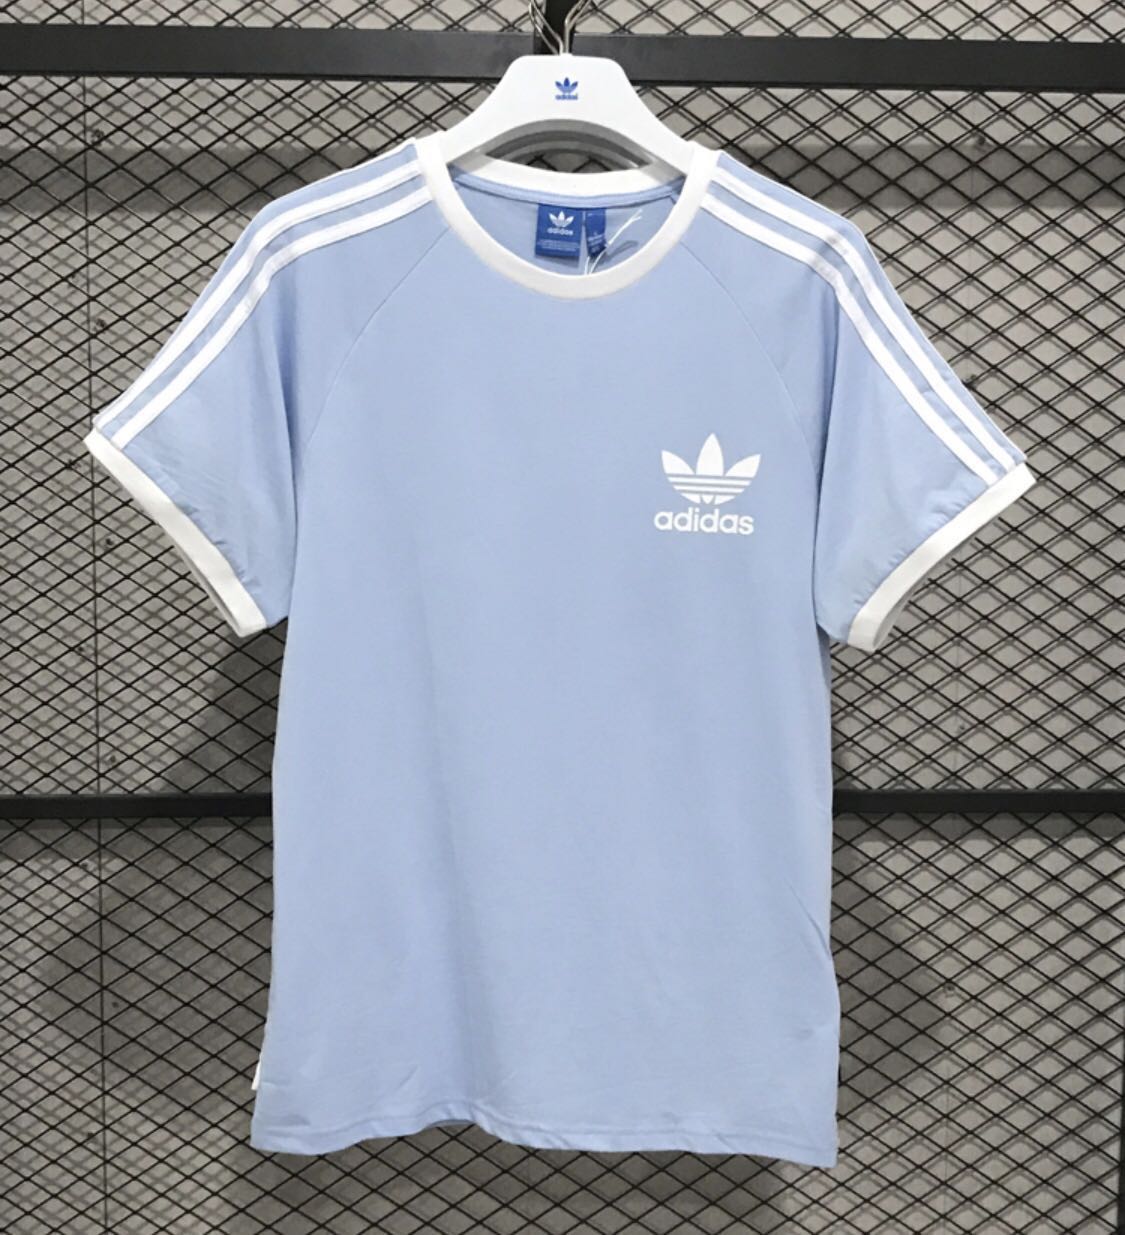 pending) Adidas Pastel baby blue tshirt 